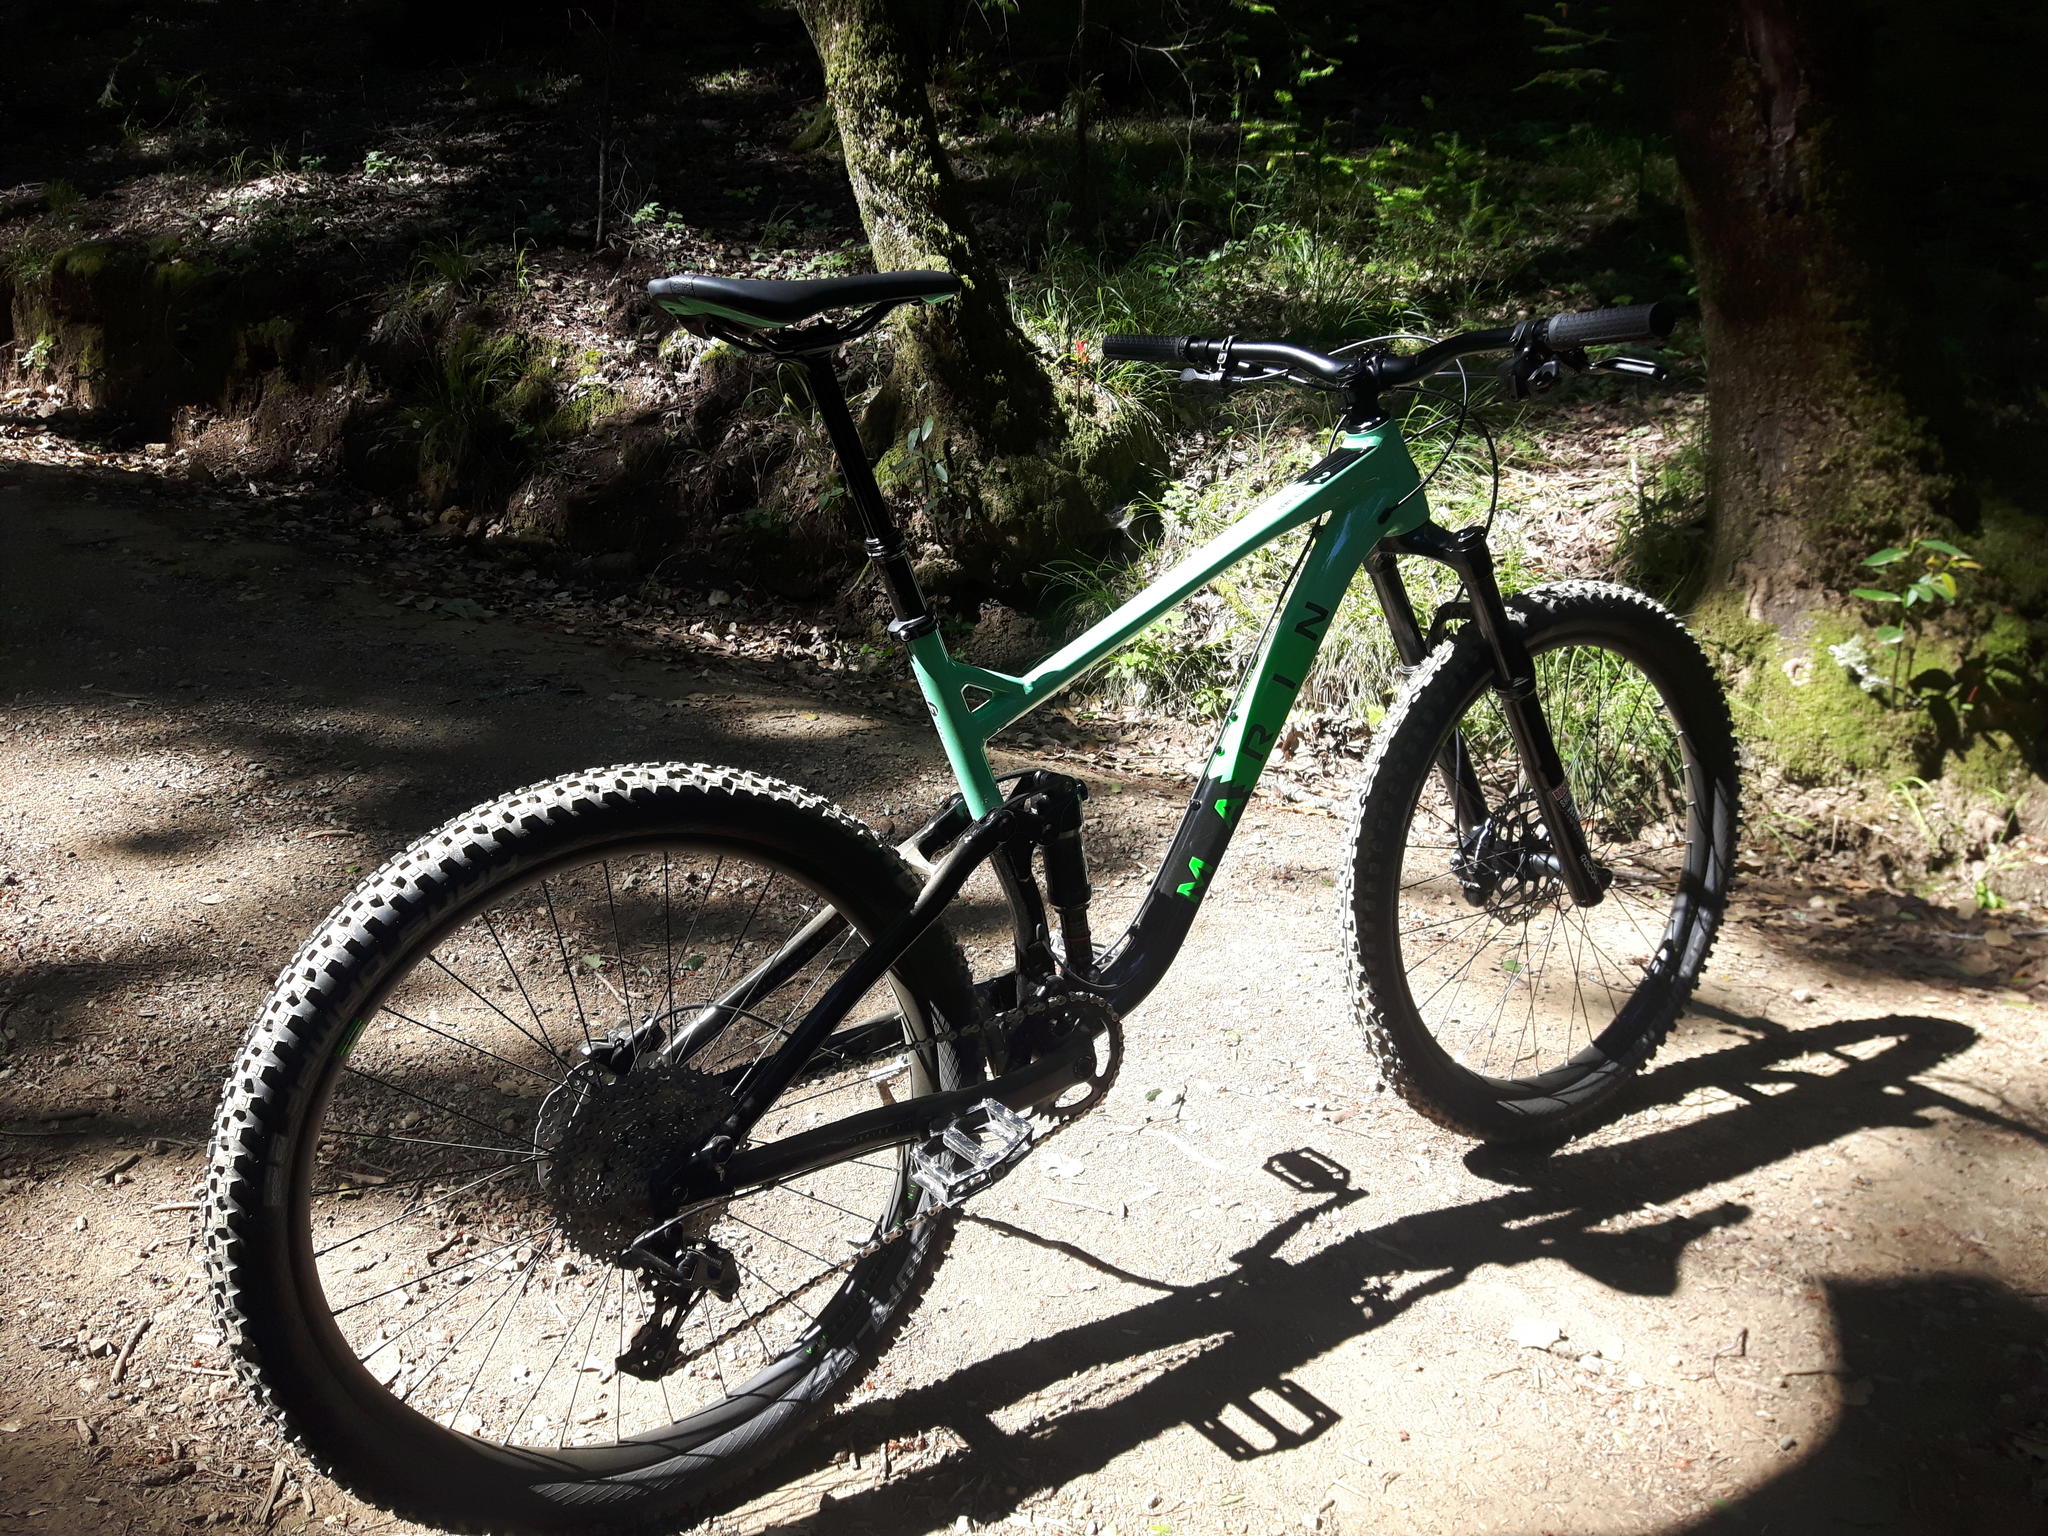 Modern full-suspension trail bike